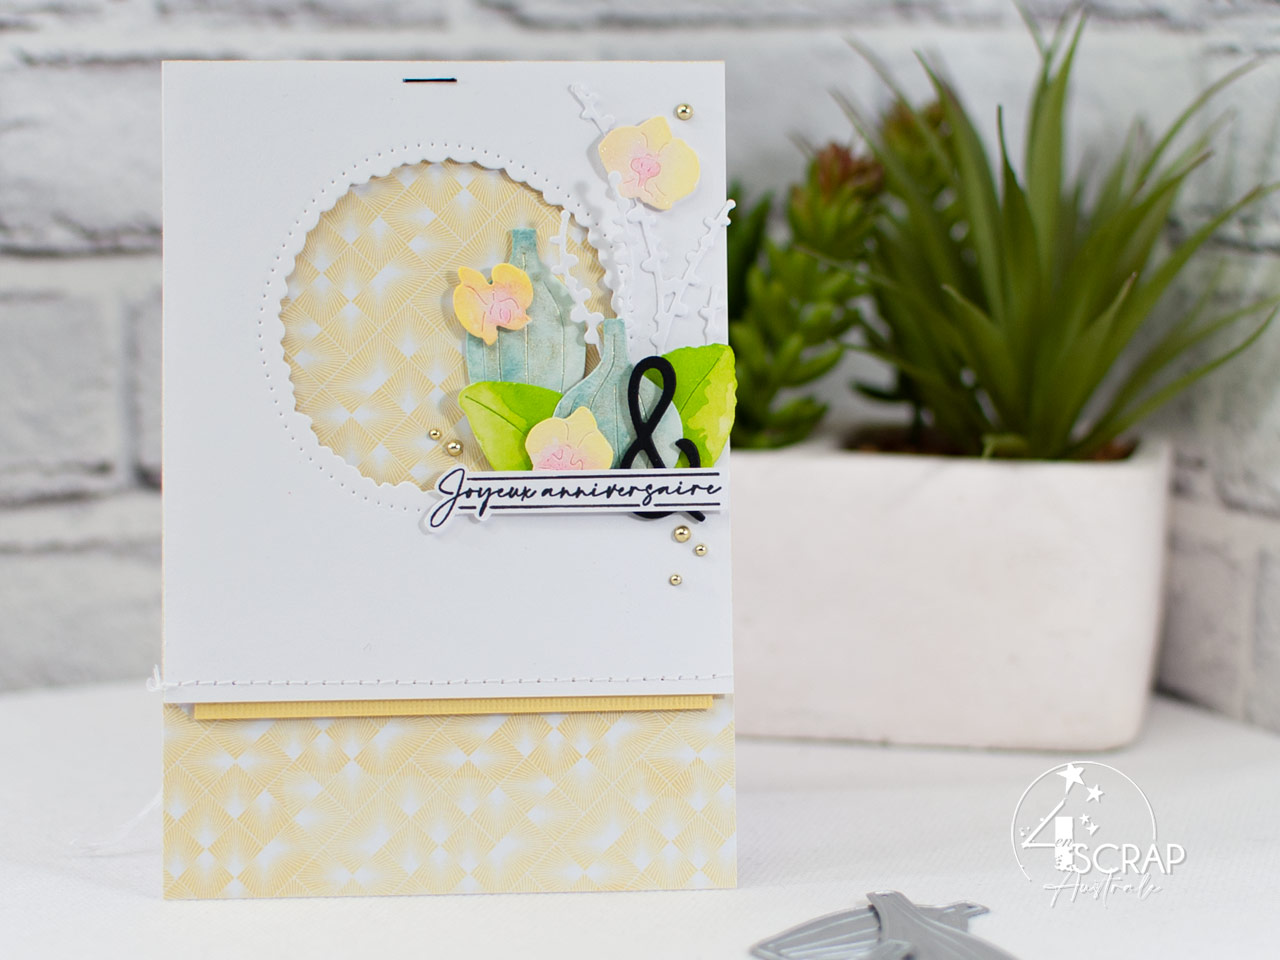 Création d'une carte d'anniversaire avec des orchidées à l'aquarelle.